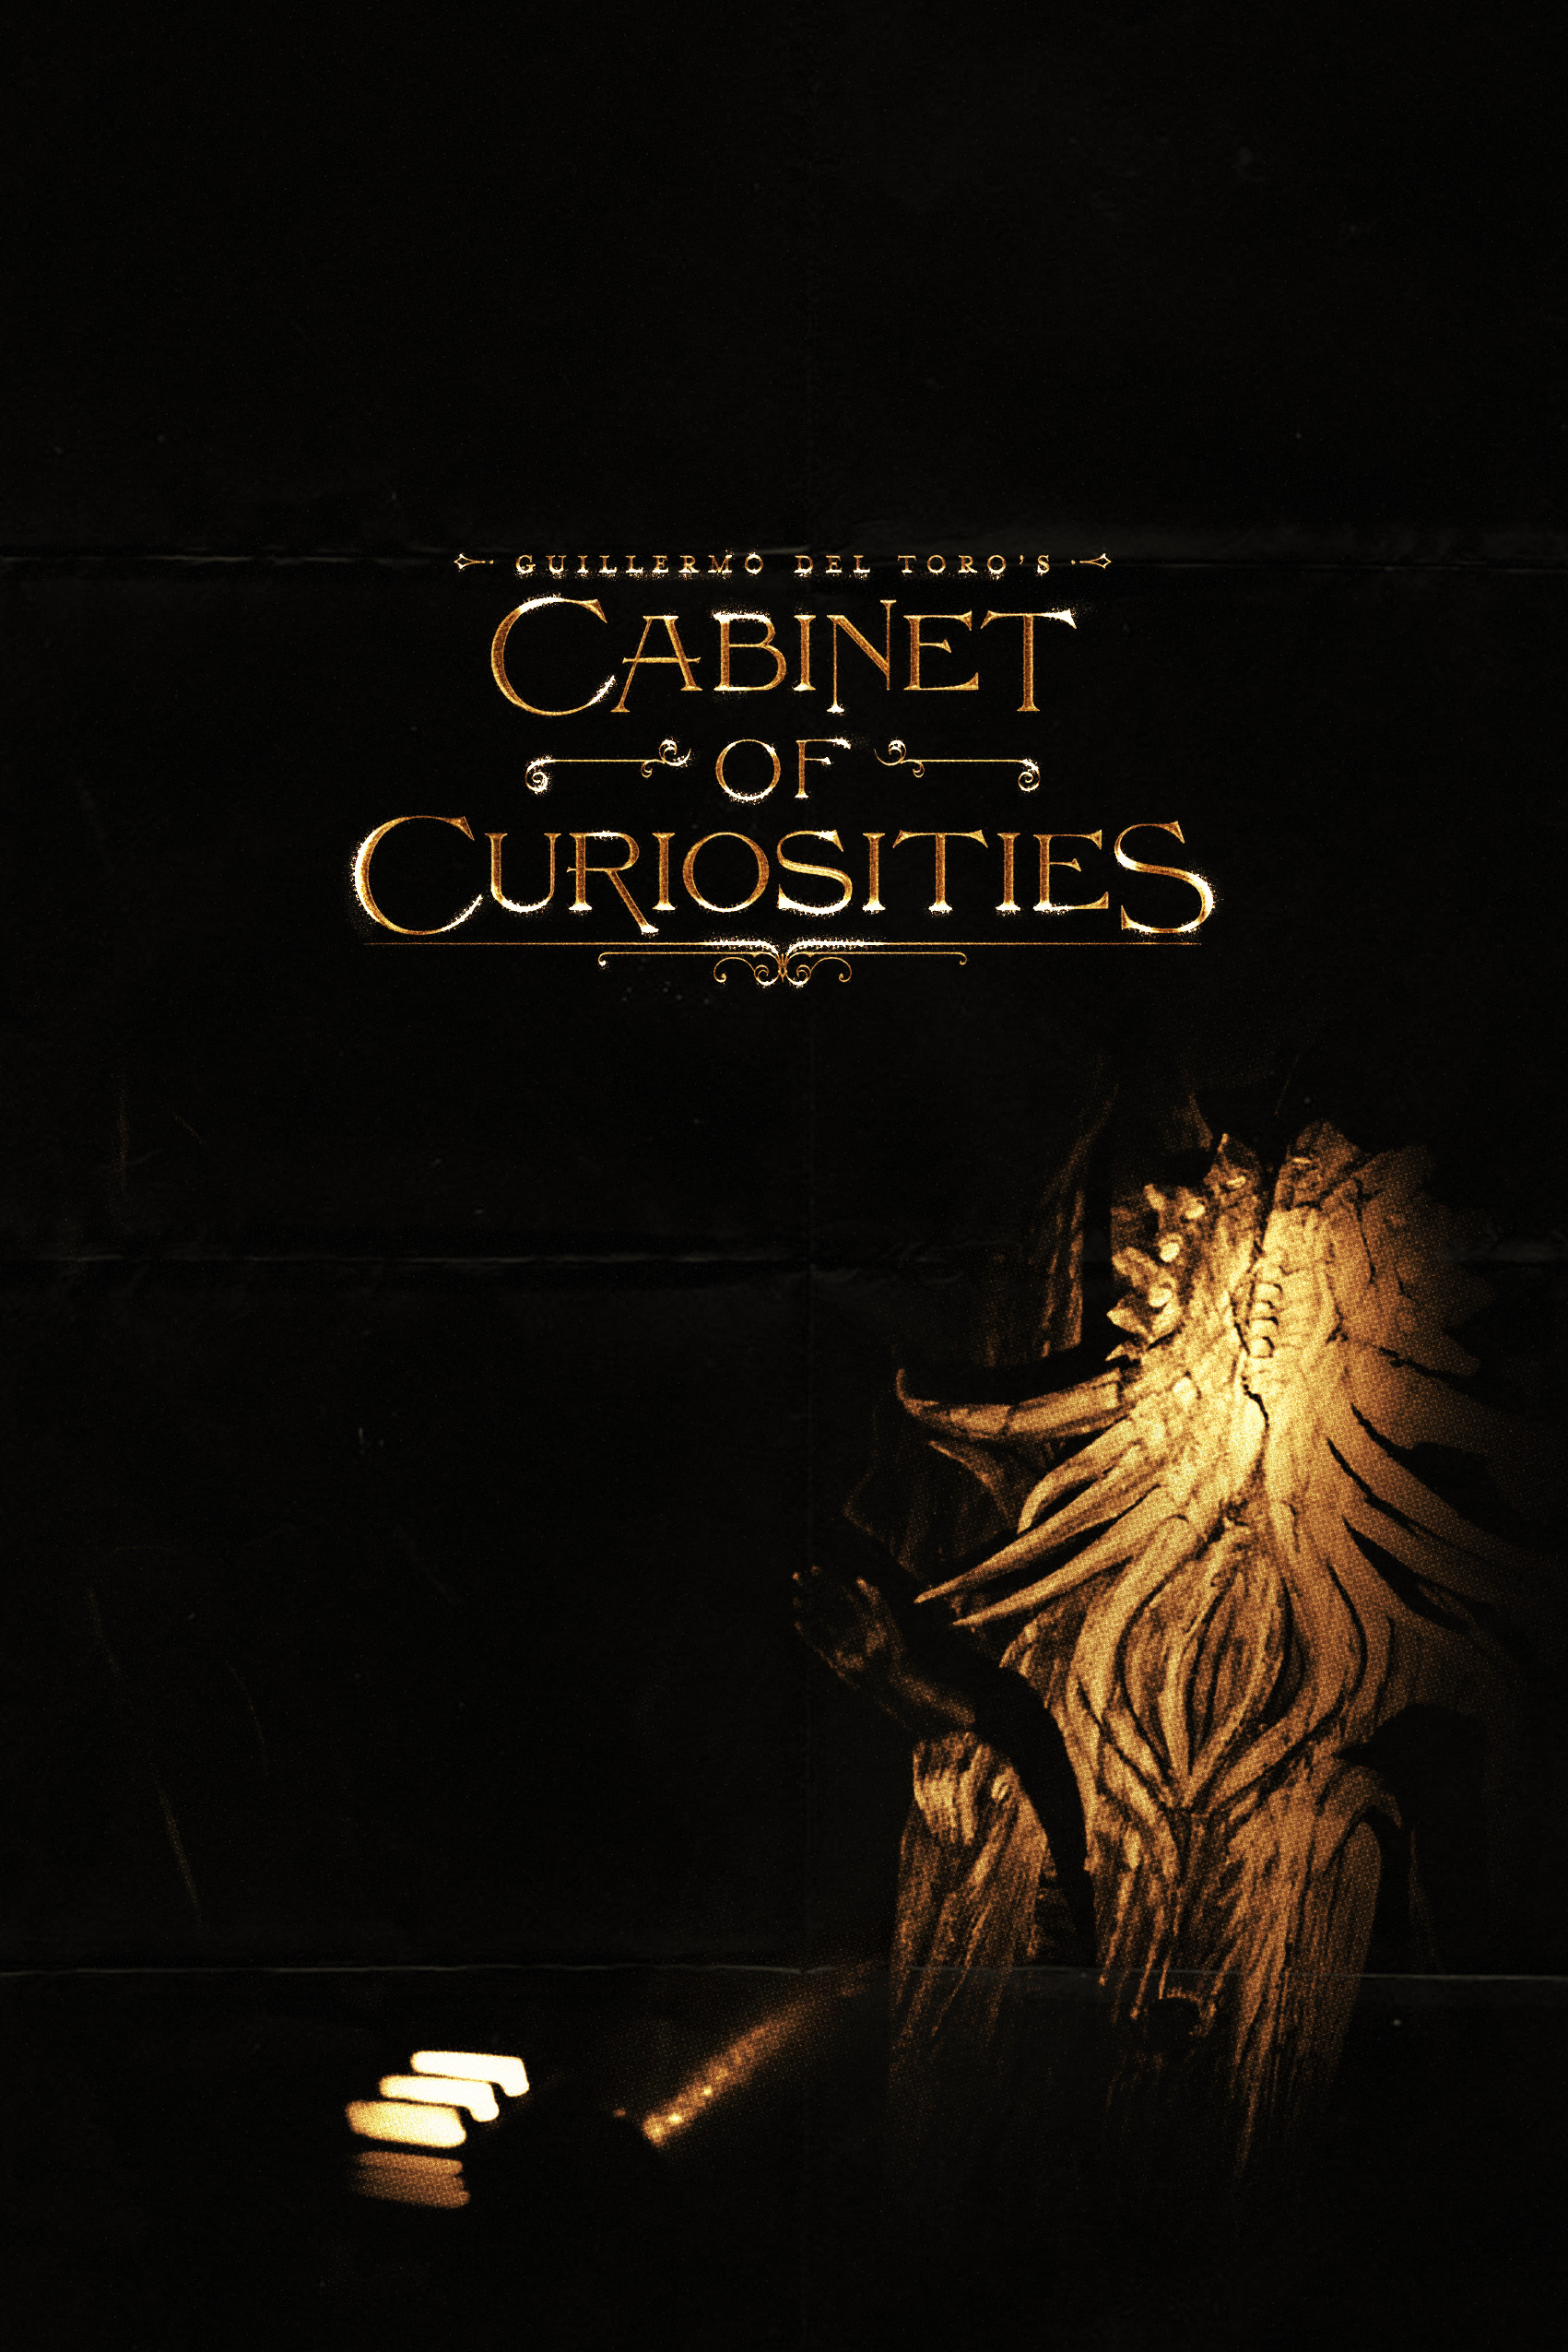 Guillermo del Toro’s Cabinet of Curiosities